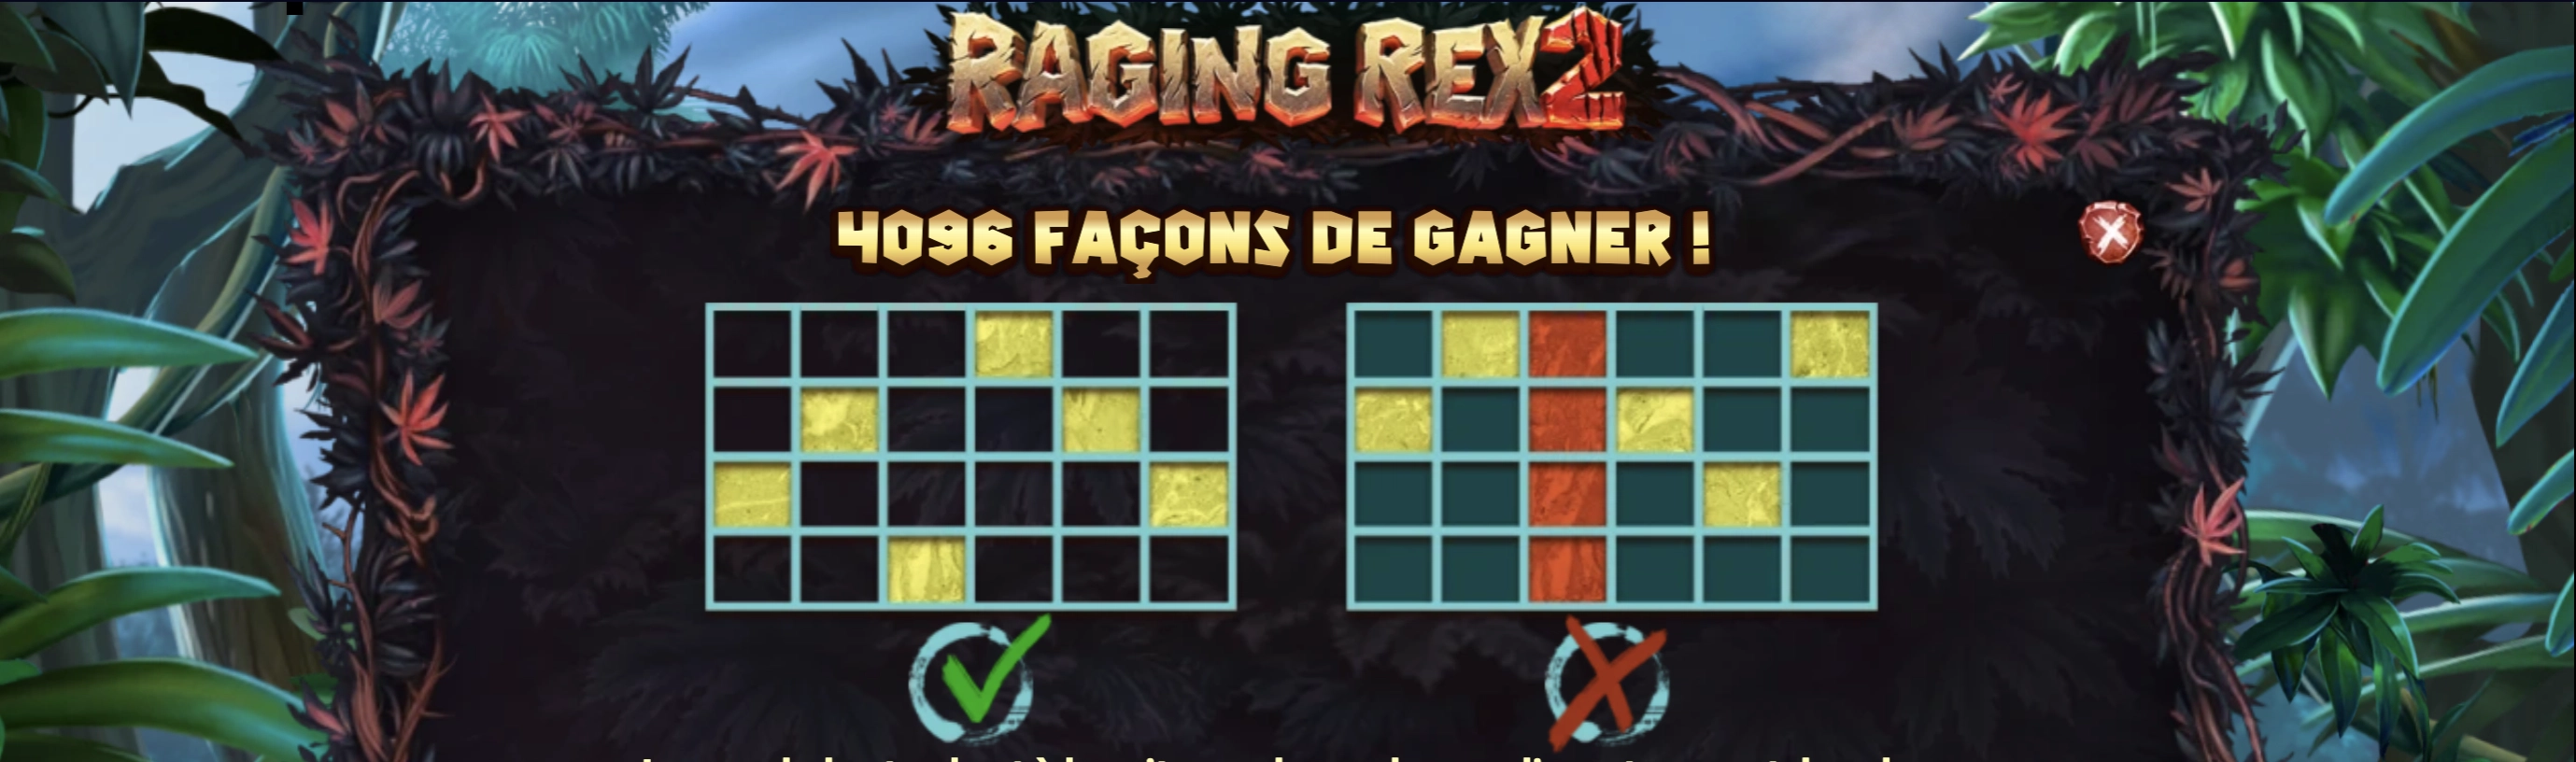 Les diffÃ©rentes connexions disponibles sur la machine a sous Raging Rex 2 de Playâ€™n GO